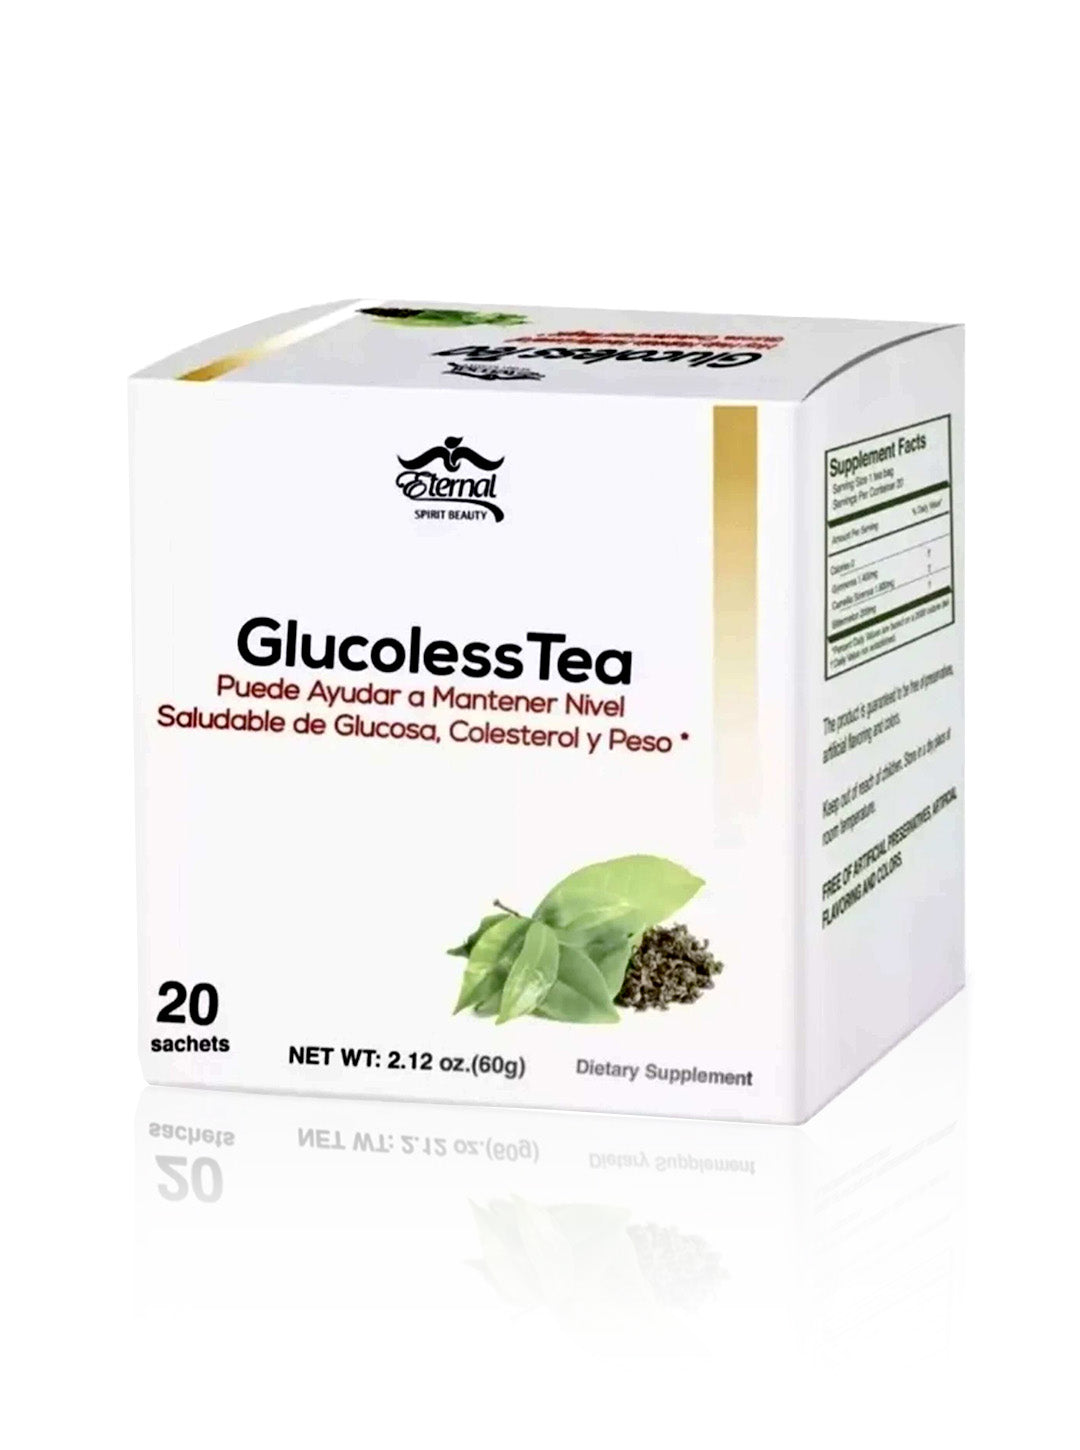 Glucoless Tea reduce glucose